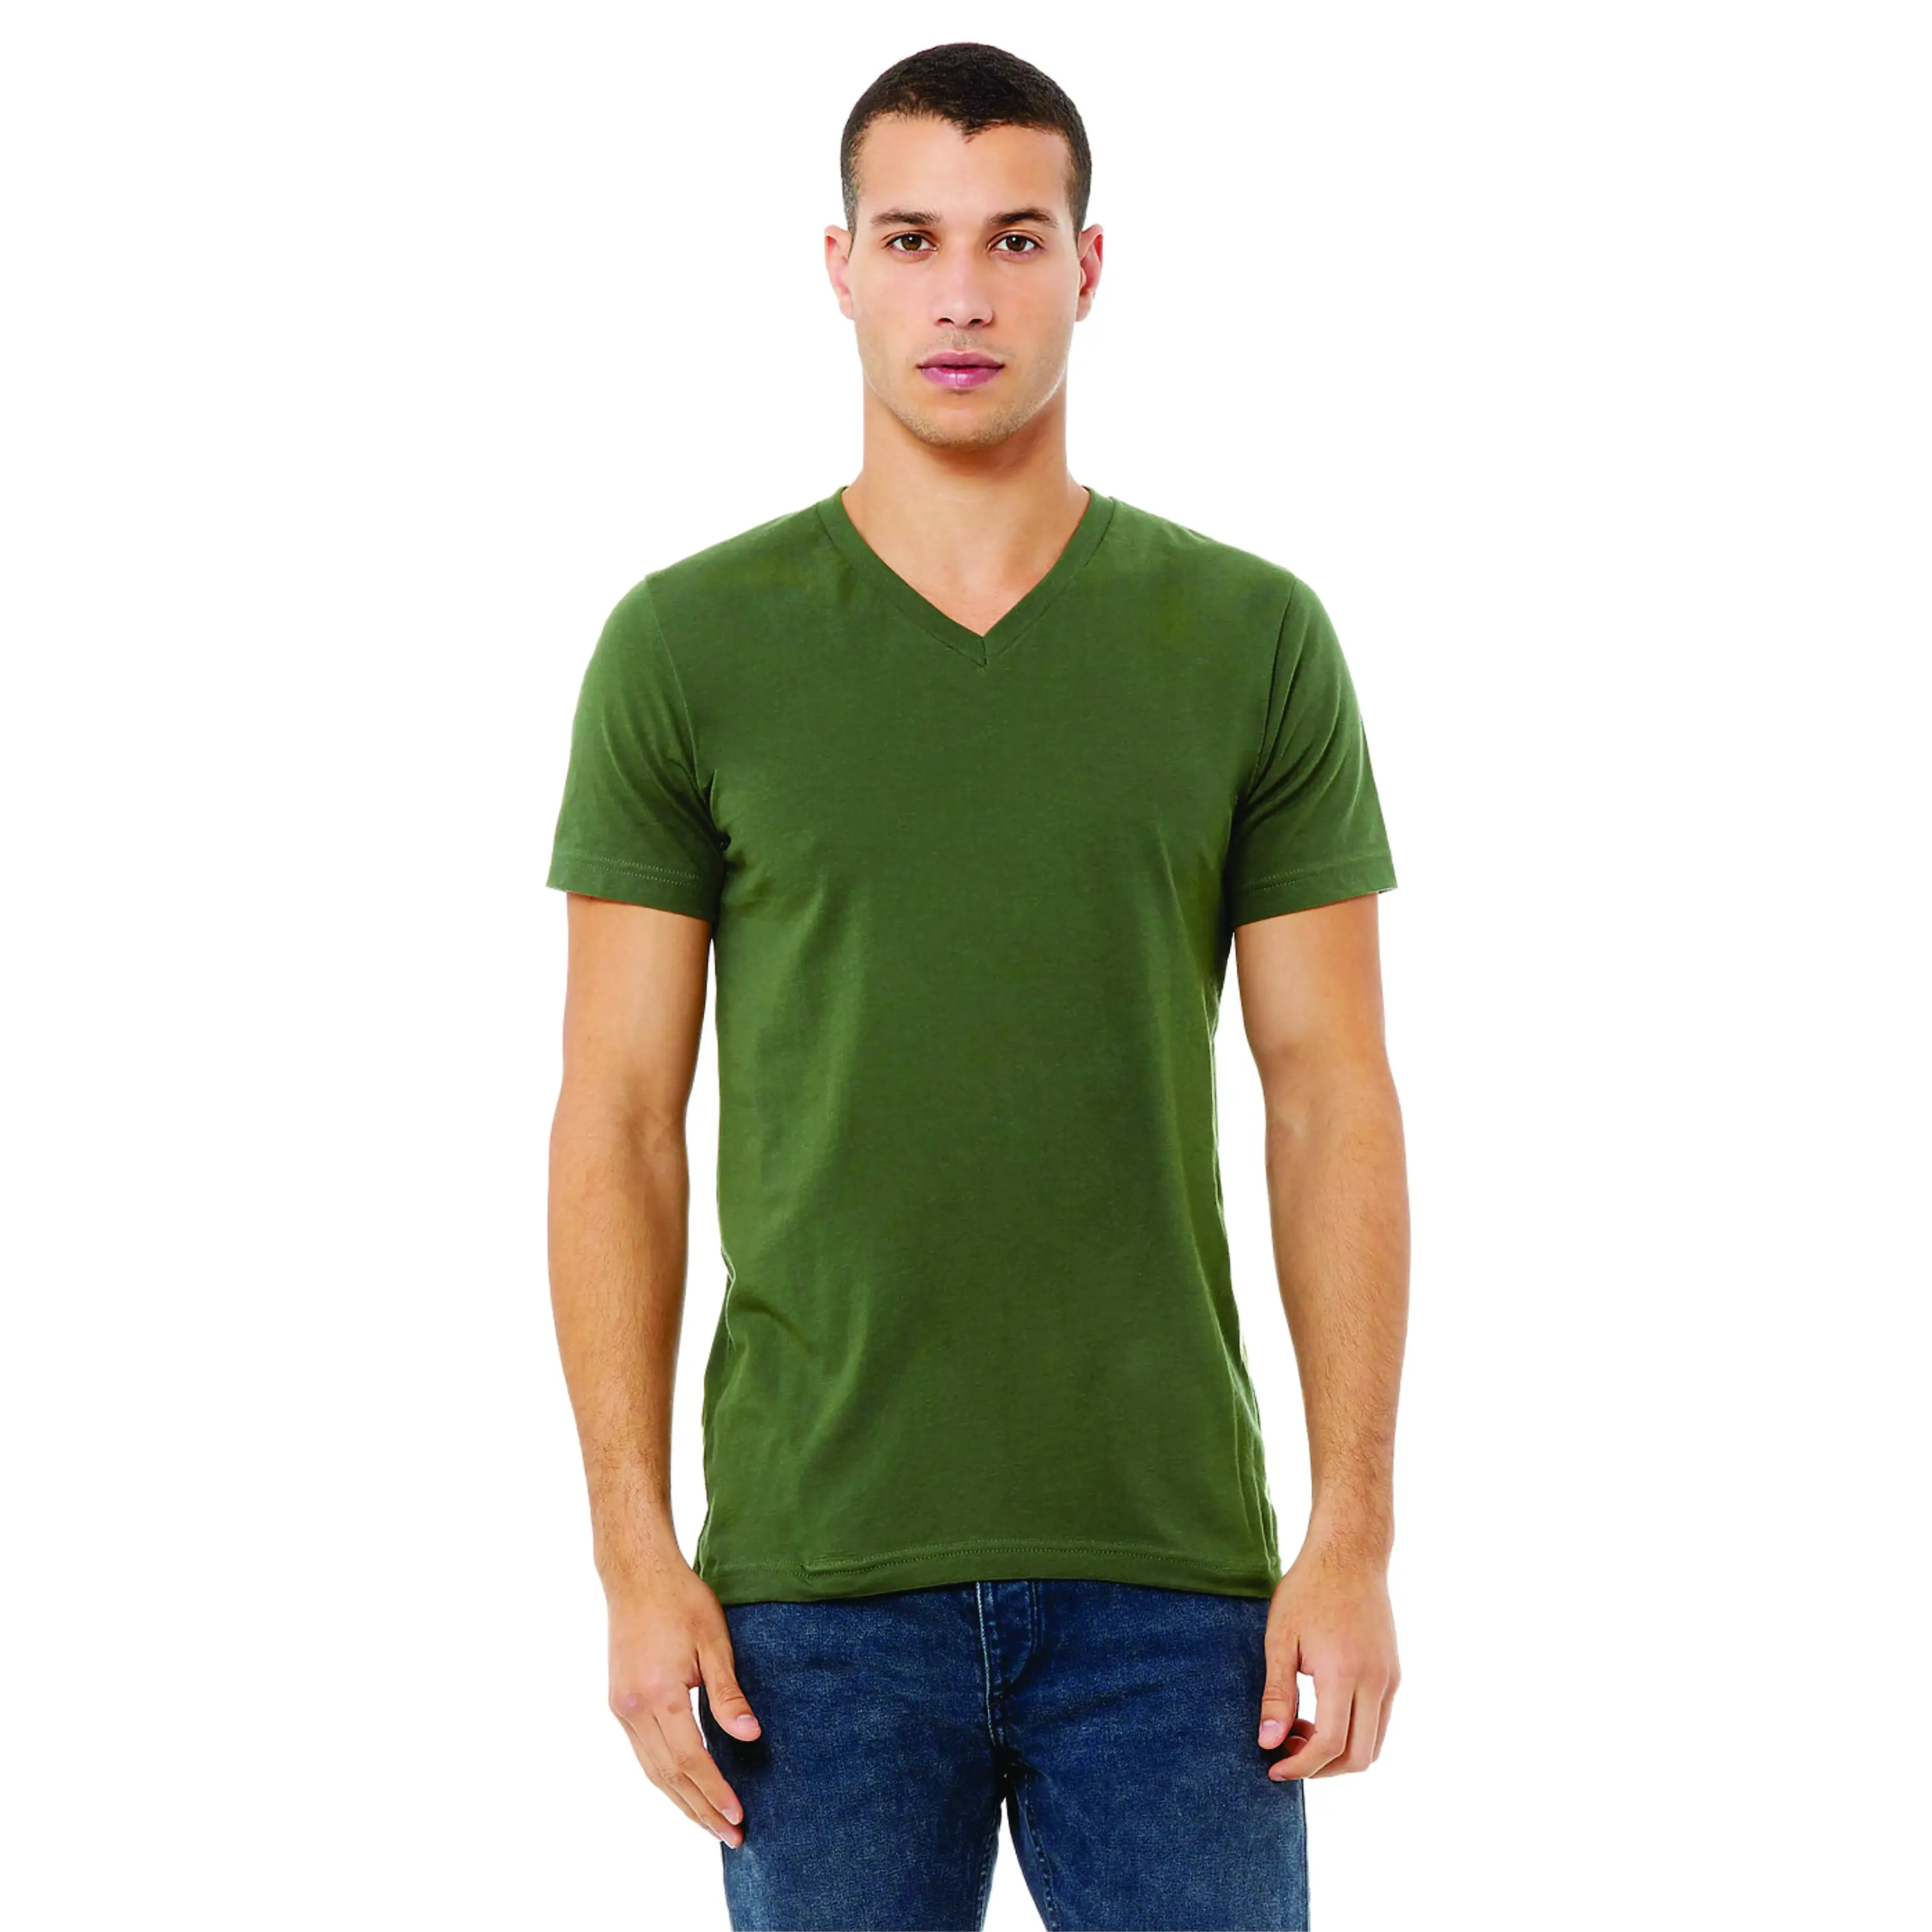 T-shirt Unisex a manica corta con scollo a V verde militare-cotone 100% Airlume, 4.2 oz, vestibilità essenziale